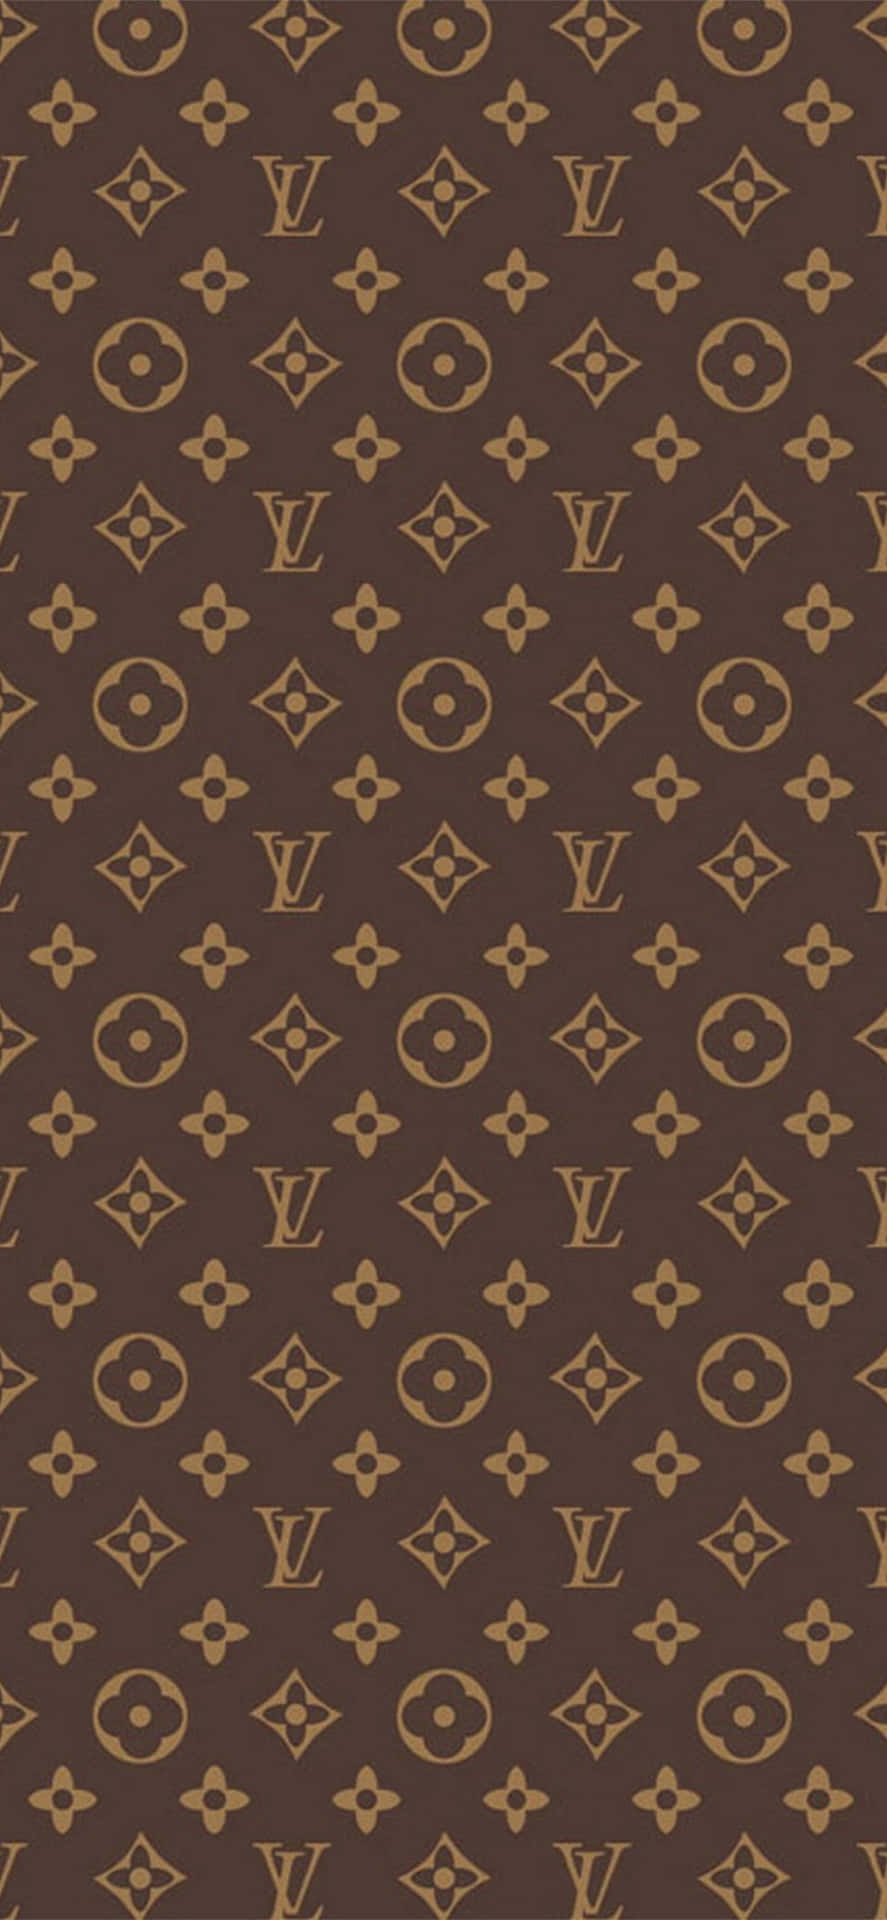 Louis Vuitton 1  Apple wallpaper, Fashion wallpaper, Louis vuitton iphone  wallpaper